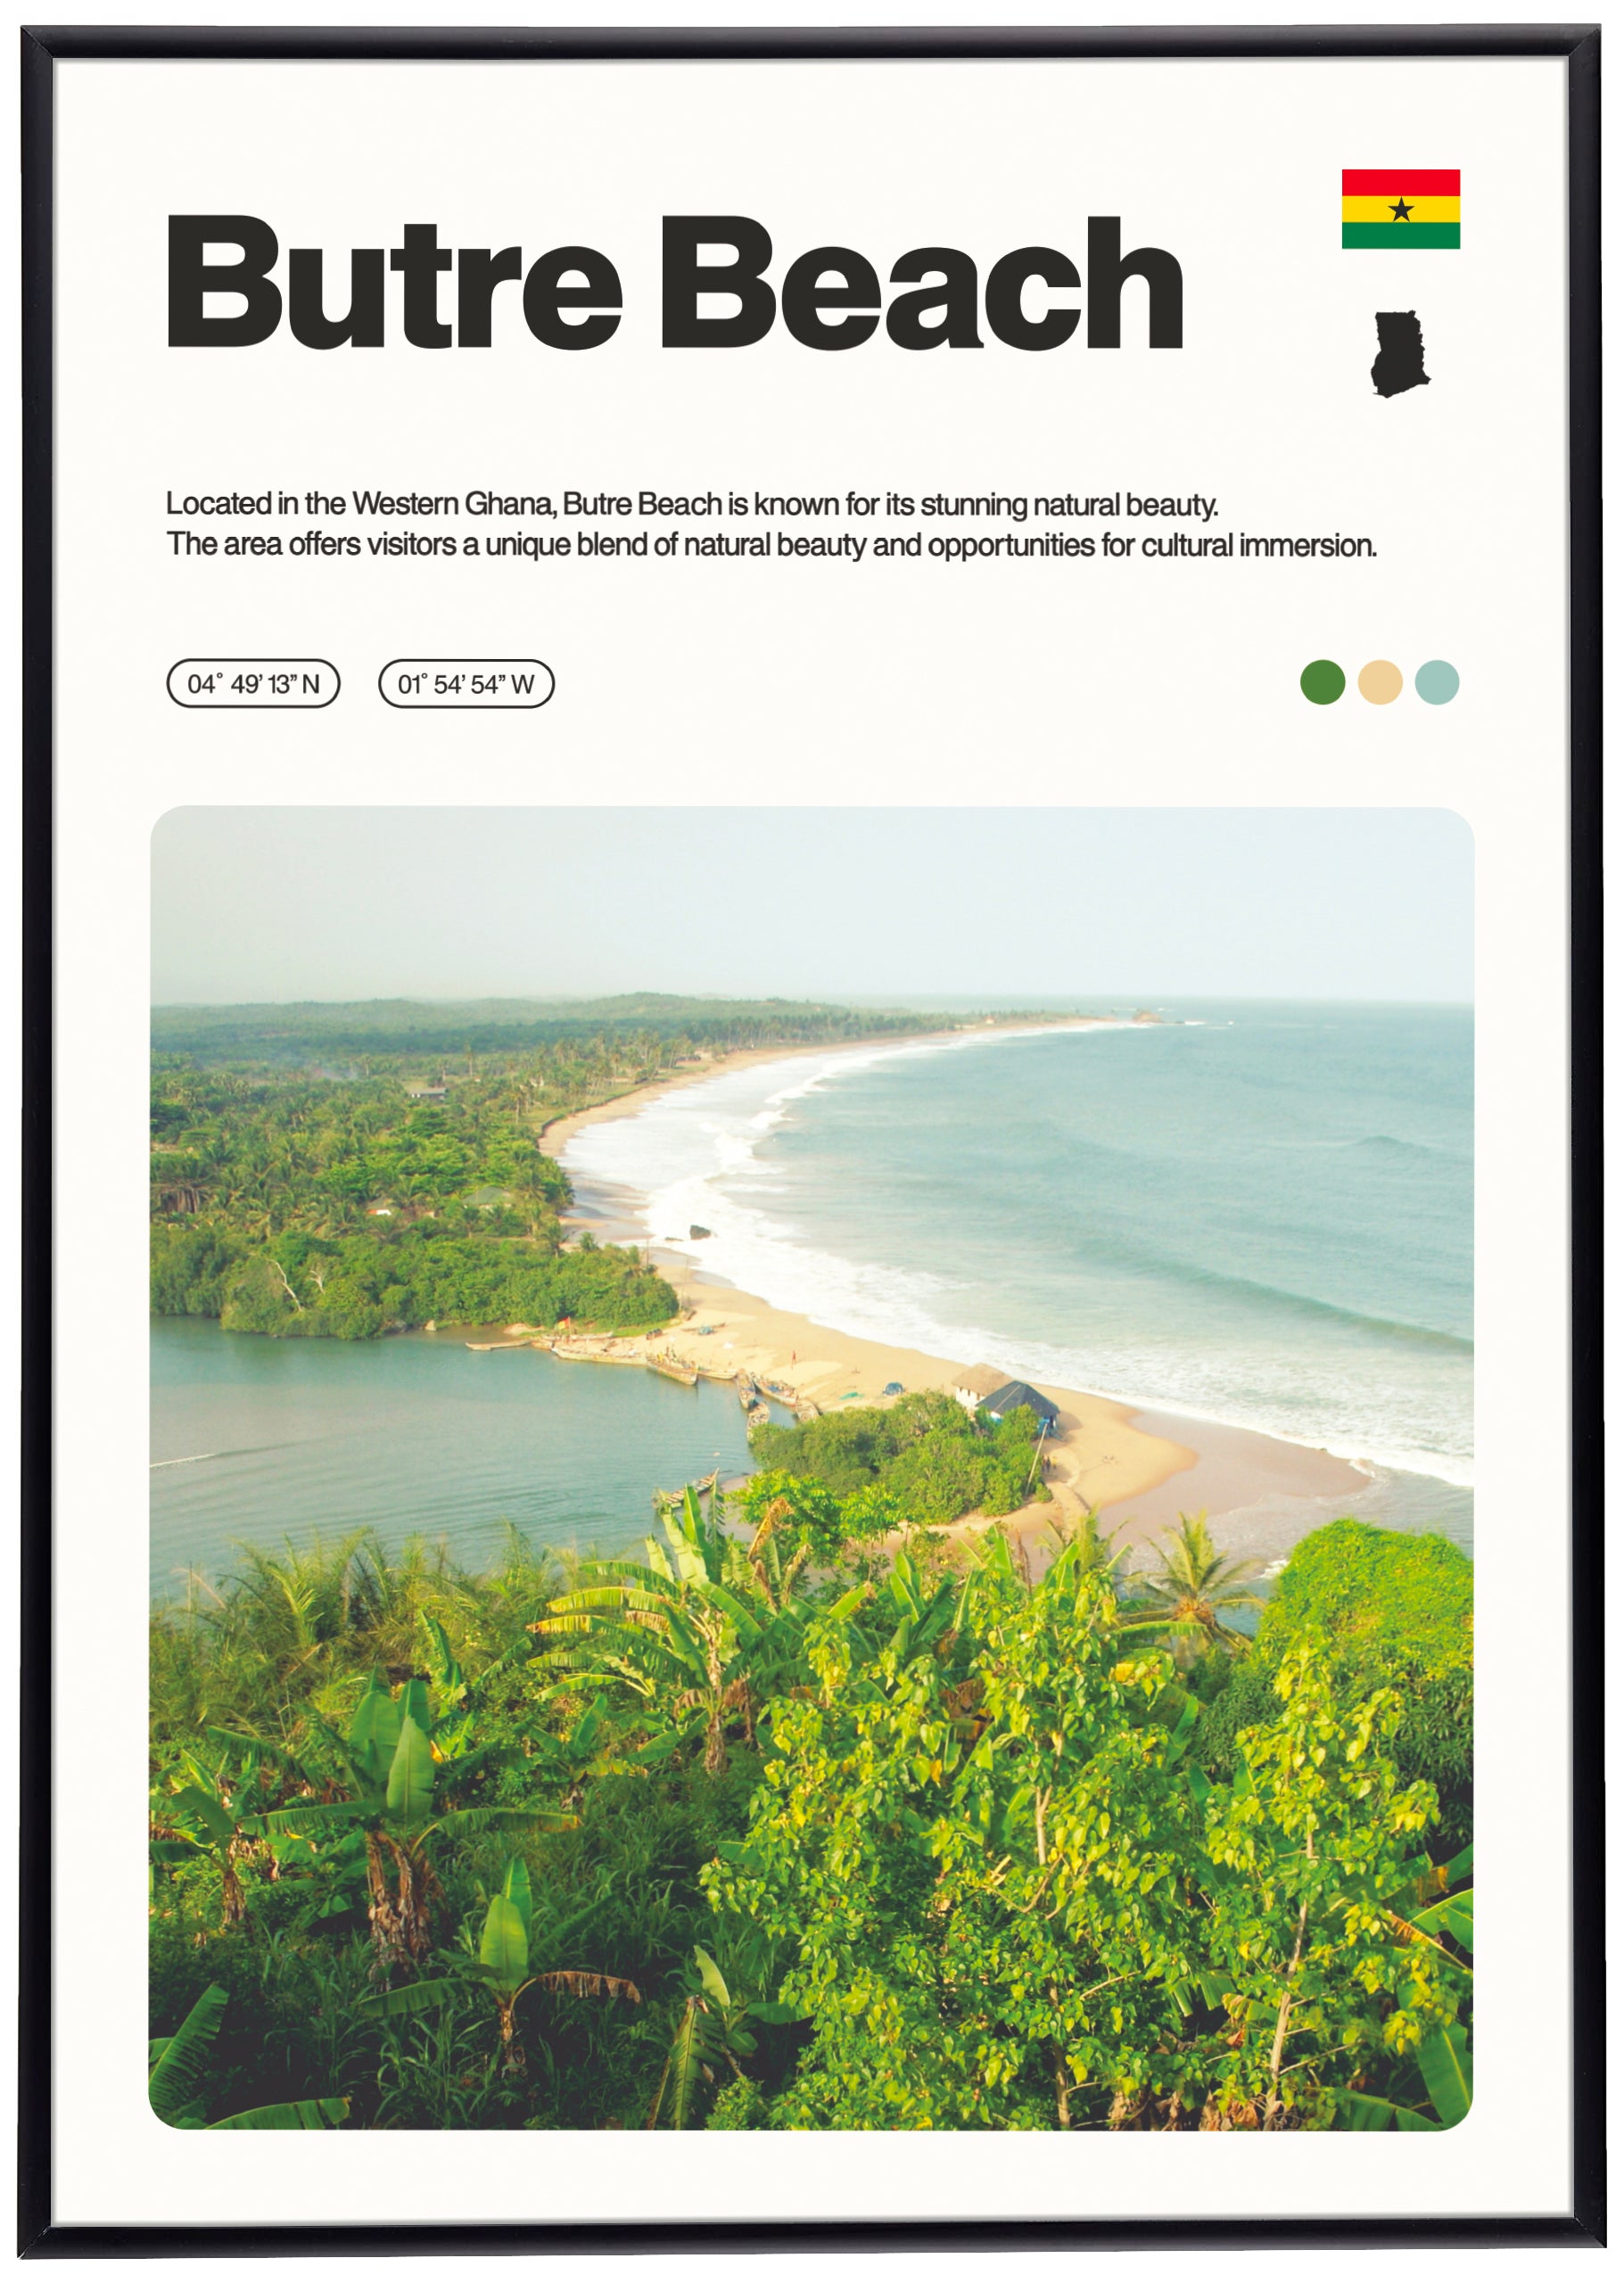 Butre Beach Print